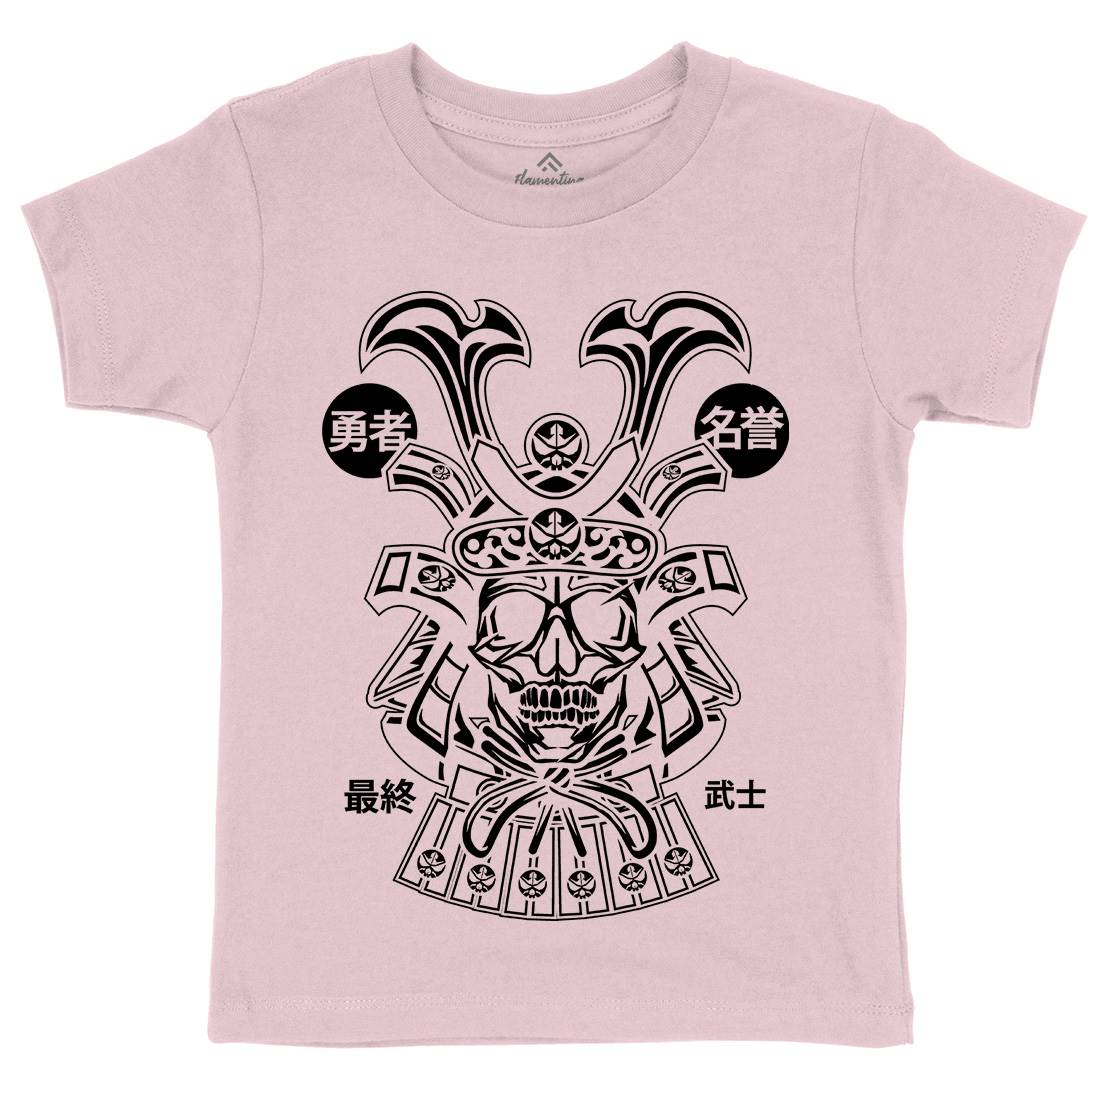 Samurai Skull Kids Crew Neck T-Shirt Asian B616